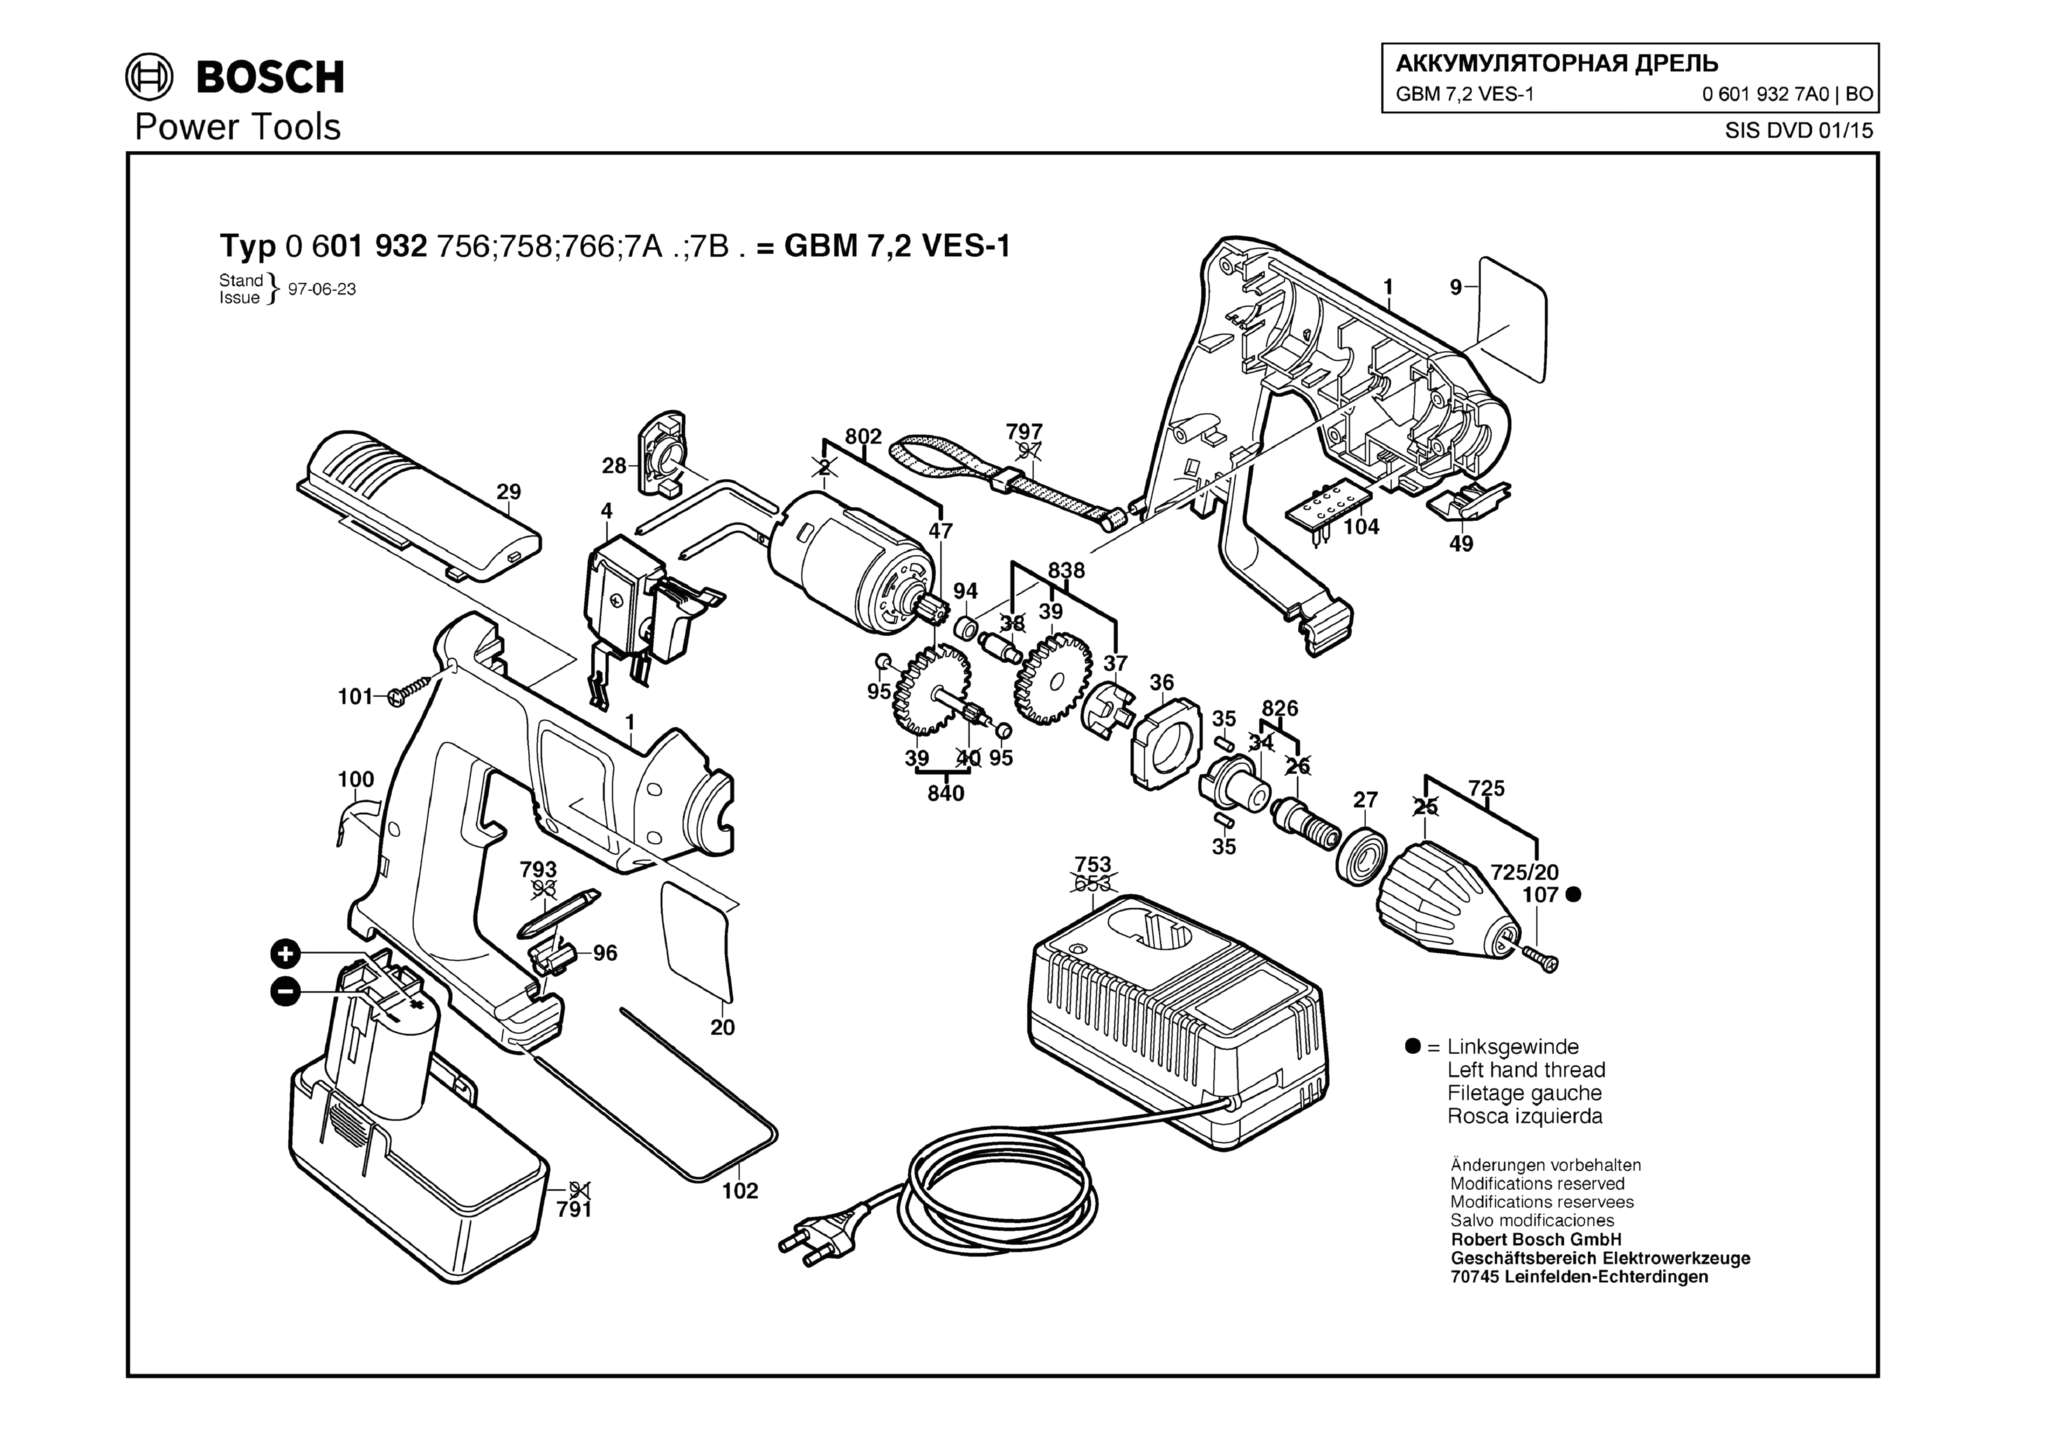 Запчасти, схема и деталировка Bosch GBM 7,2 VES-1 (ТИП 06019327A0)